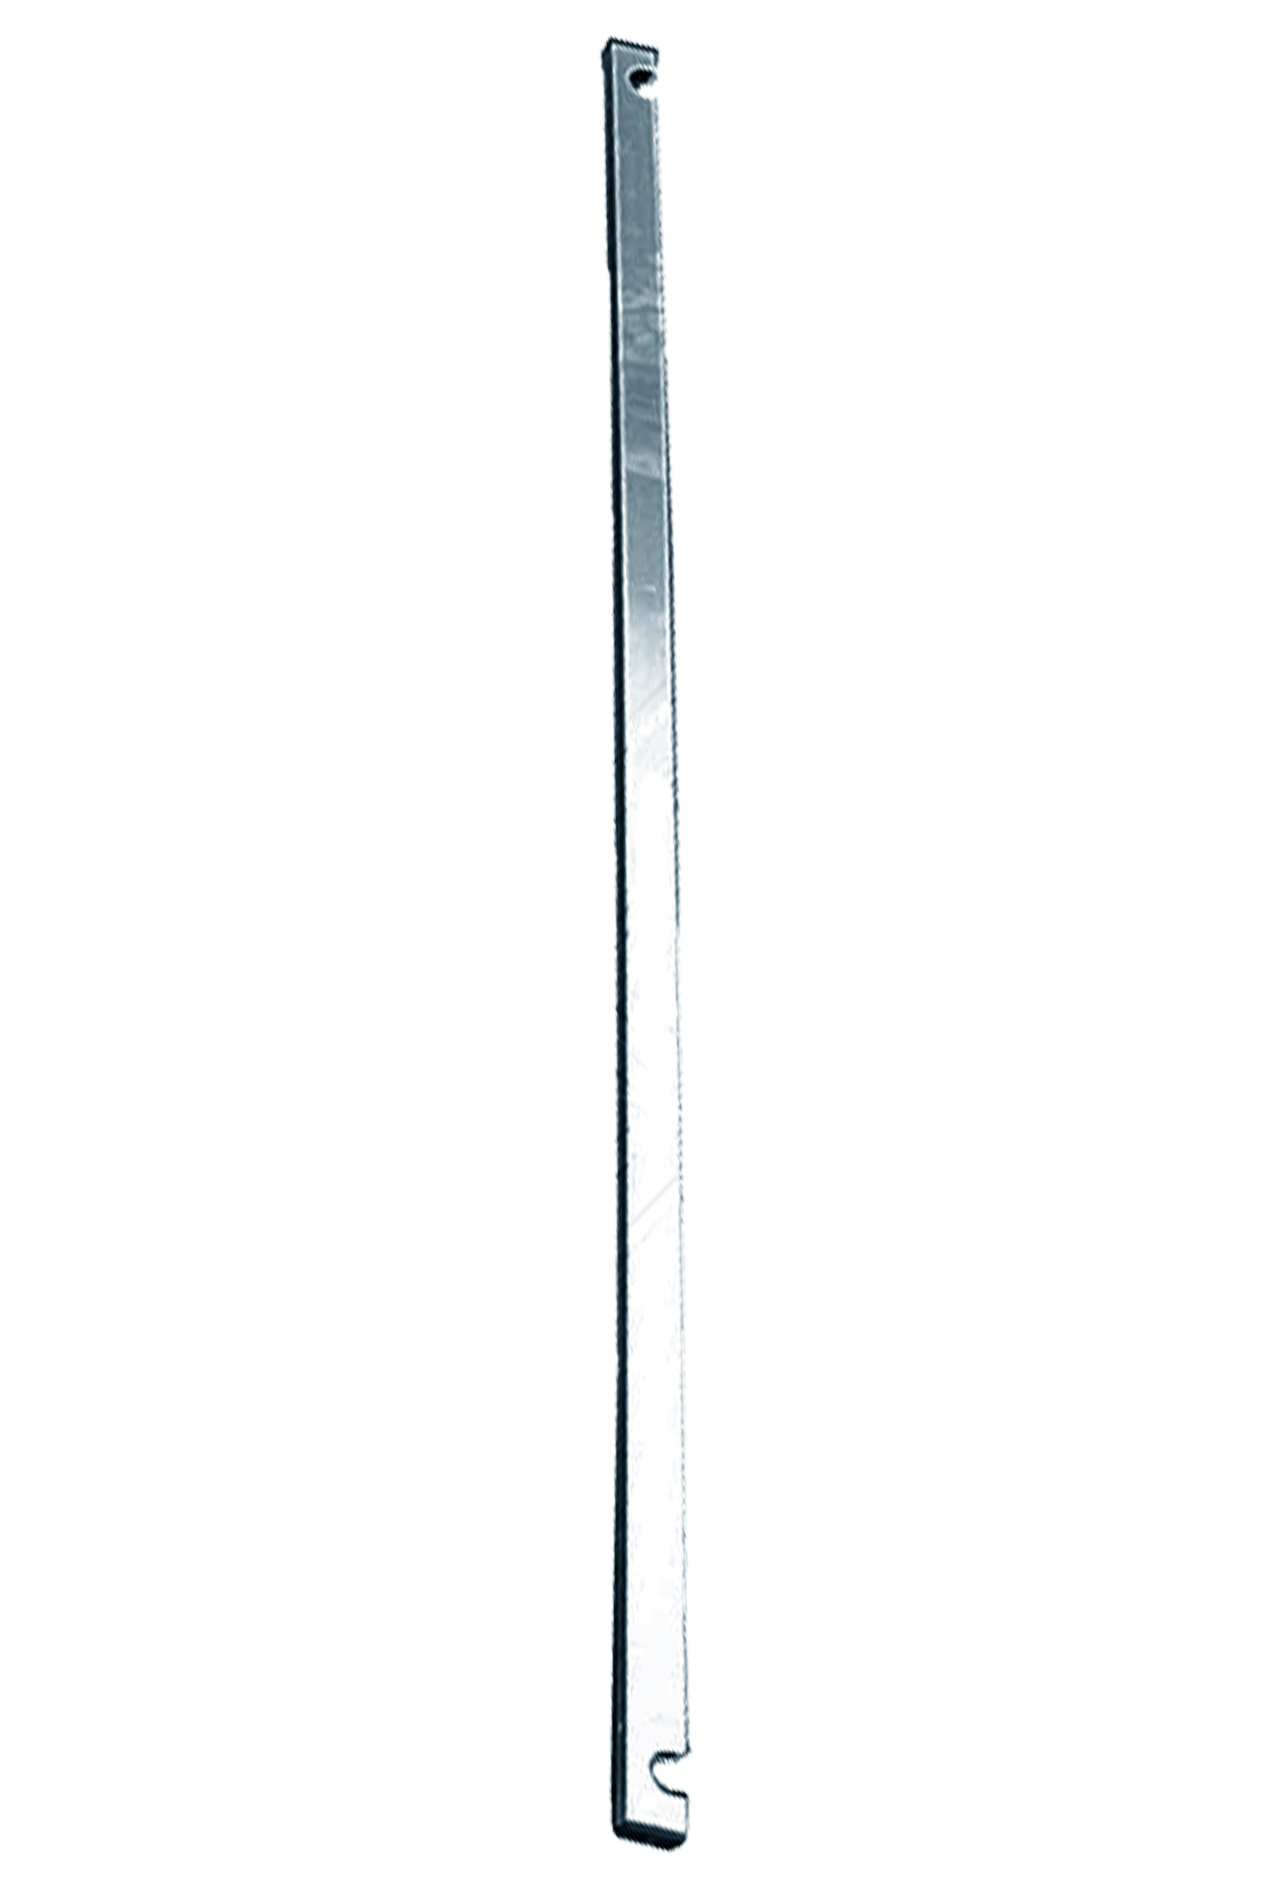 Дополнительное изображение Stabilo серии 1000 рабочая высота 4,2 м, размер площадки (3x0.75 м)